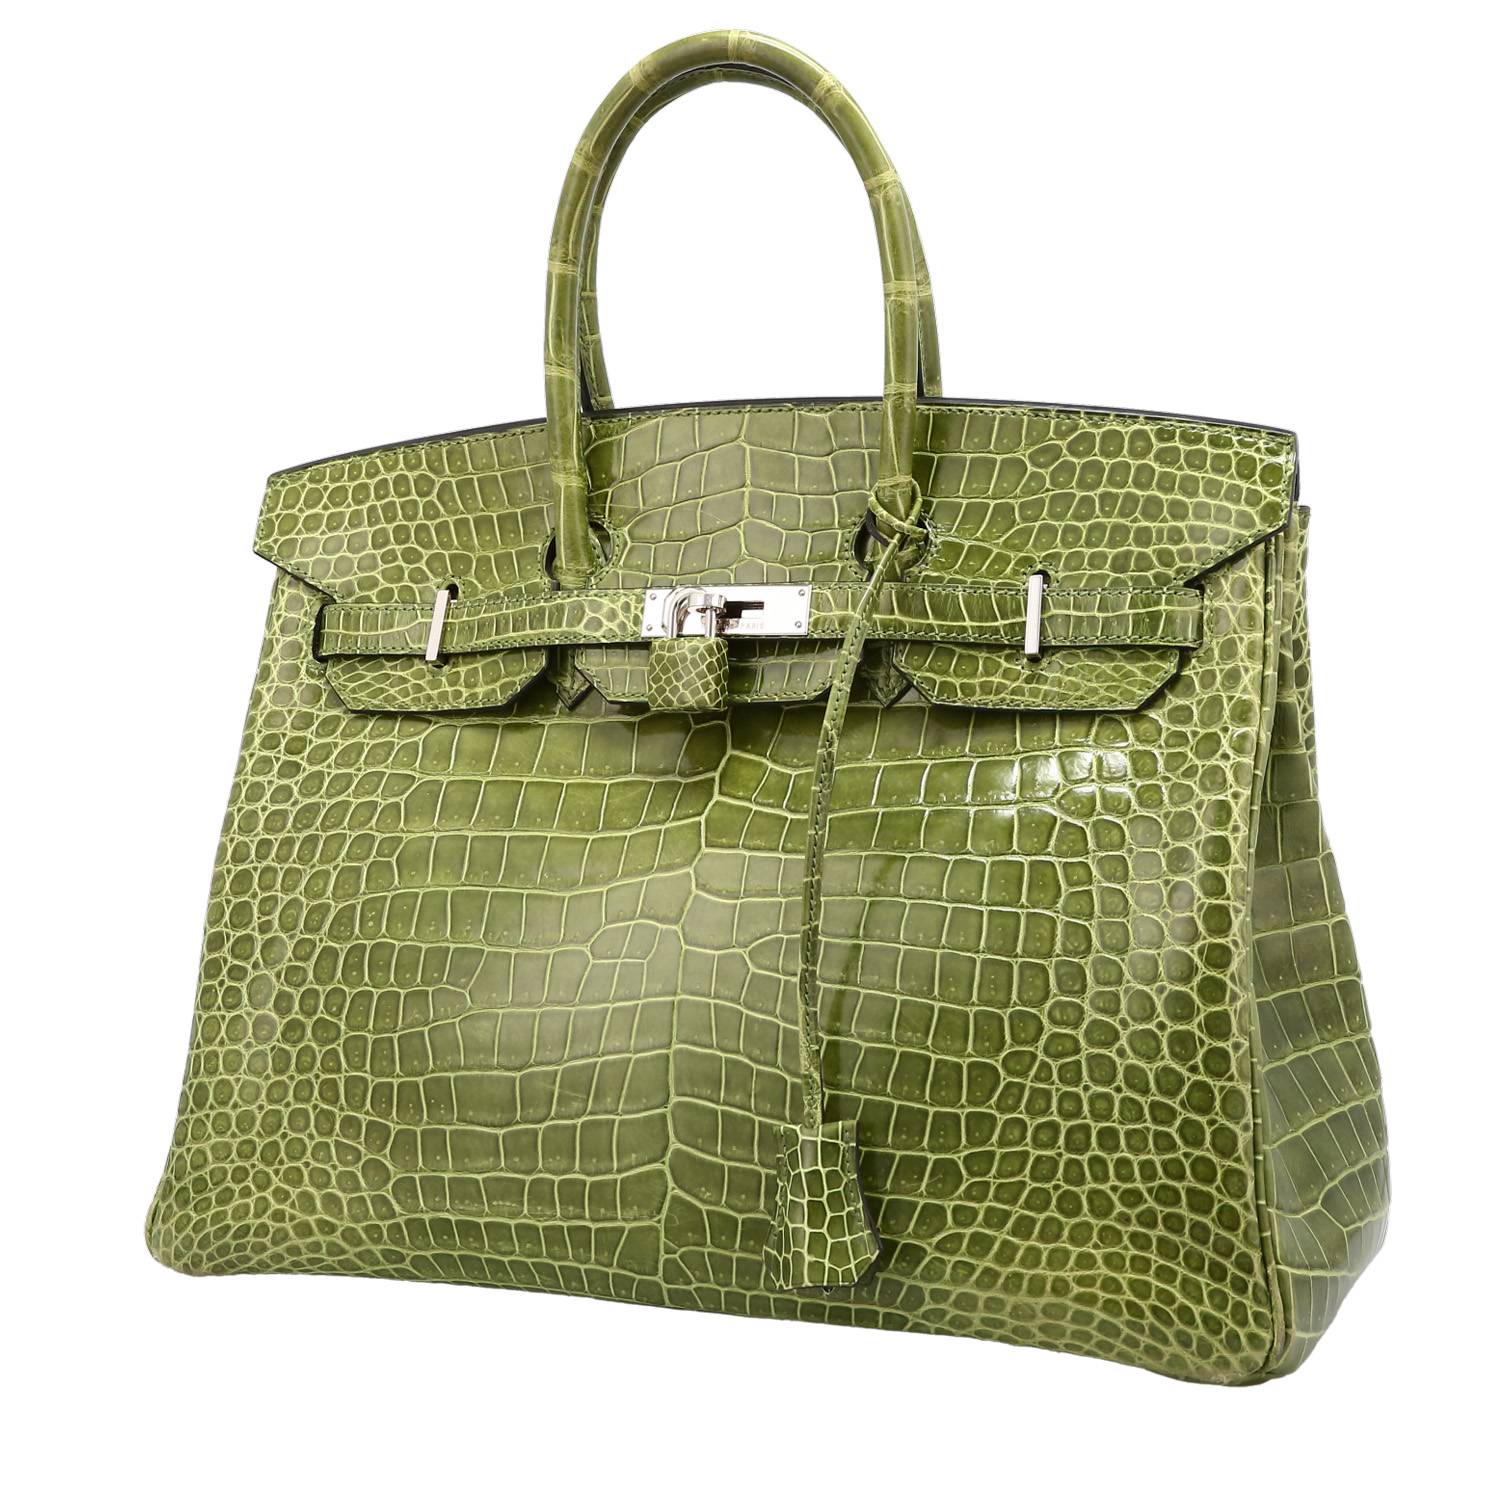 Hermes, Bags, Hermes Birkin Bag 3 Anis Green Togo Leather Gold Hardware